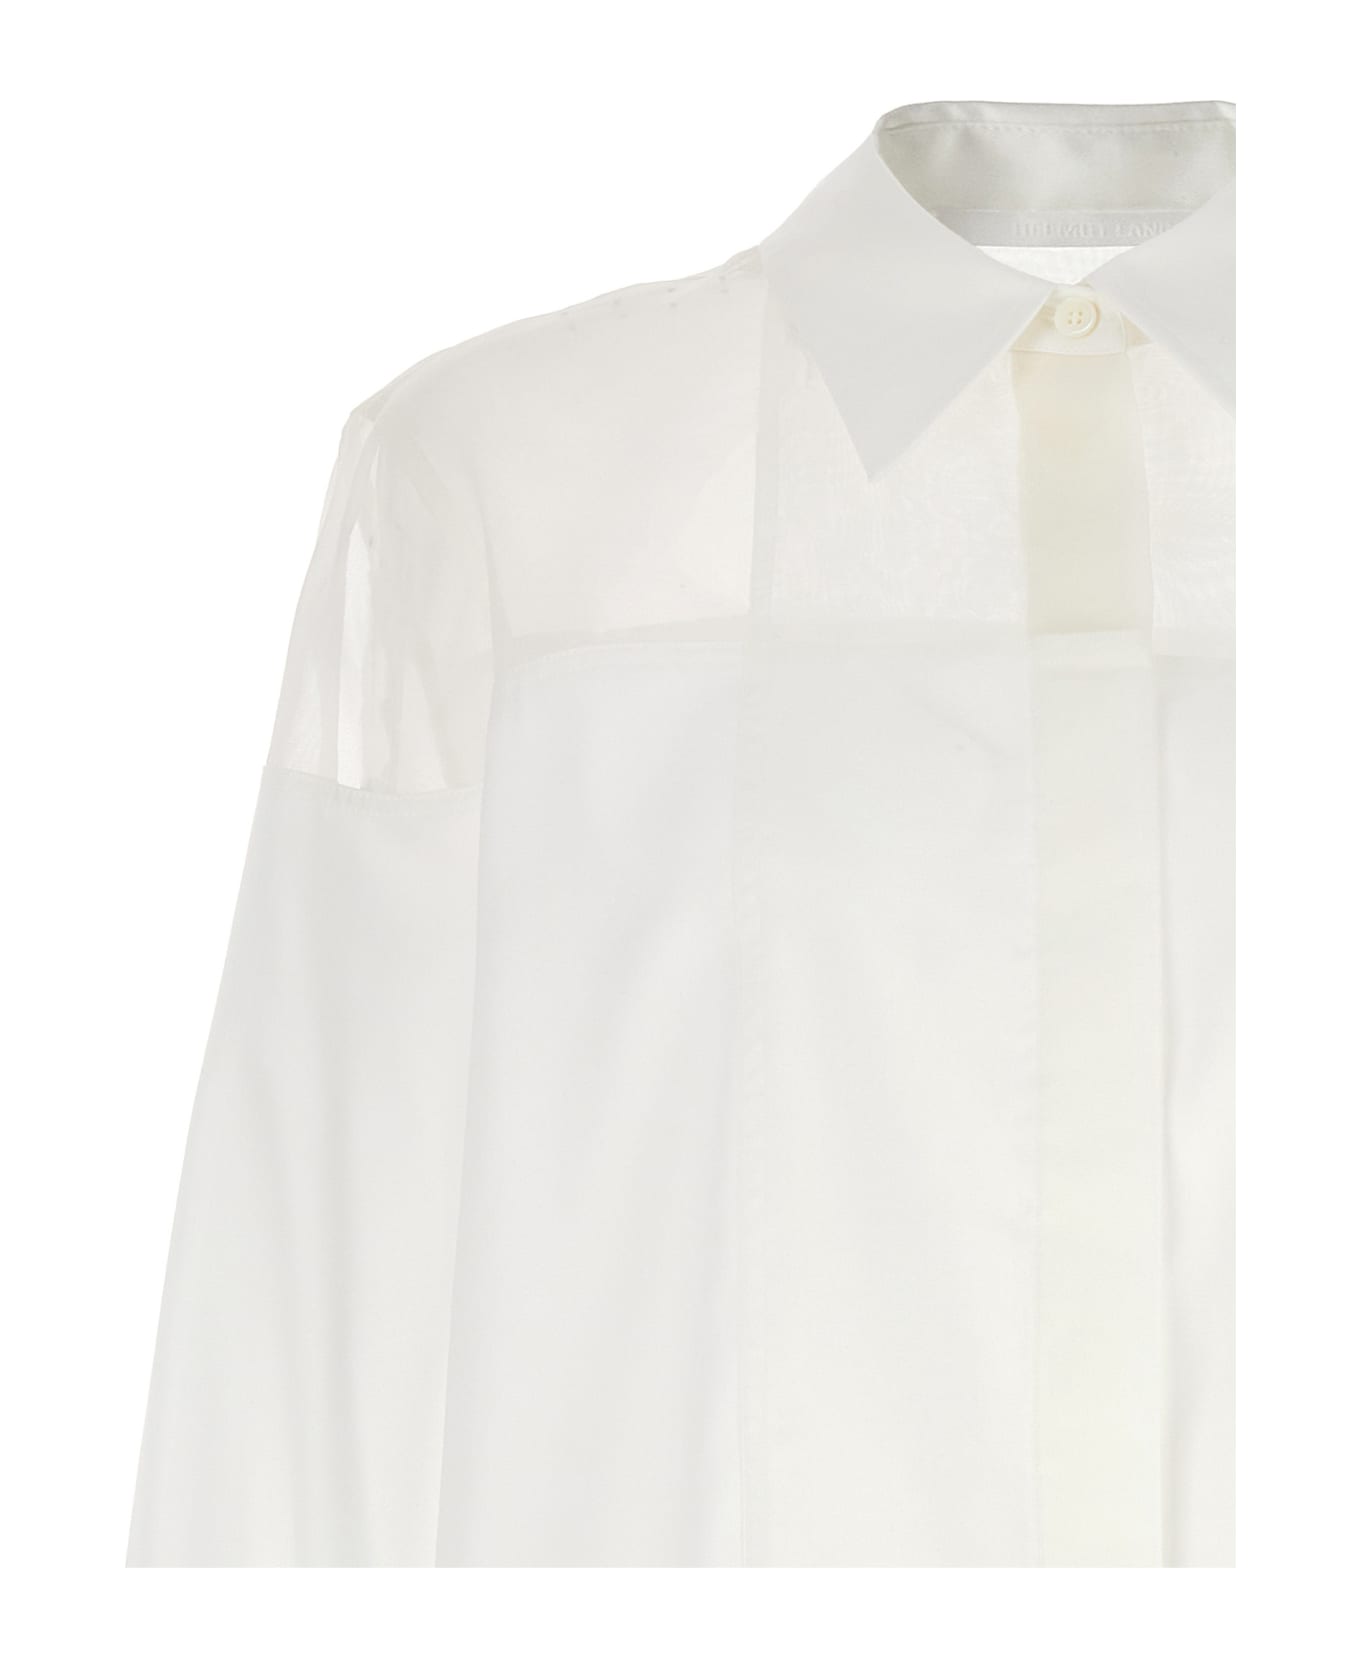 Helmut Lang 'tuxedo' Shirt - White